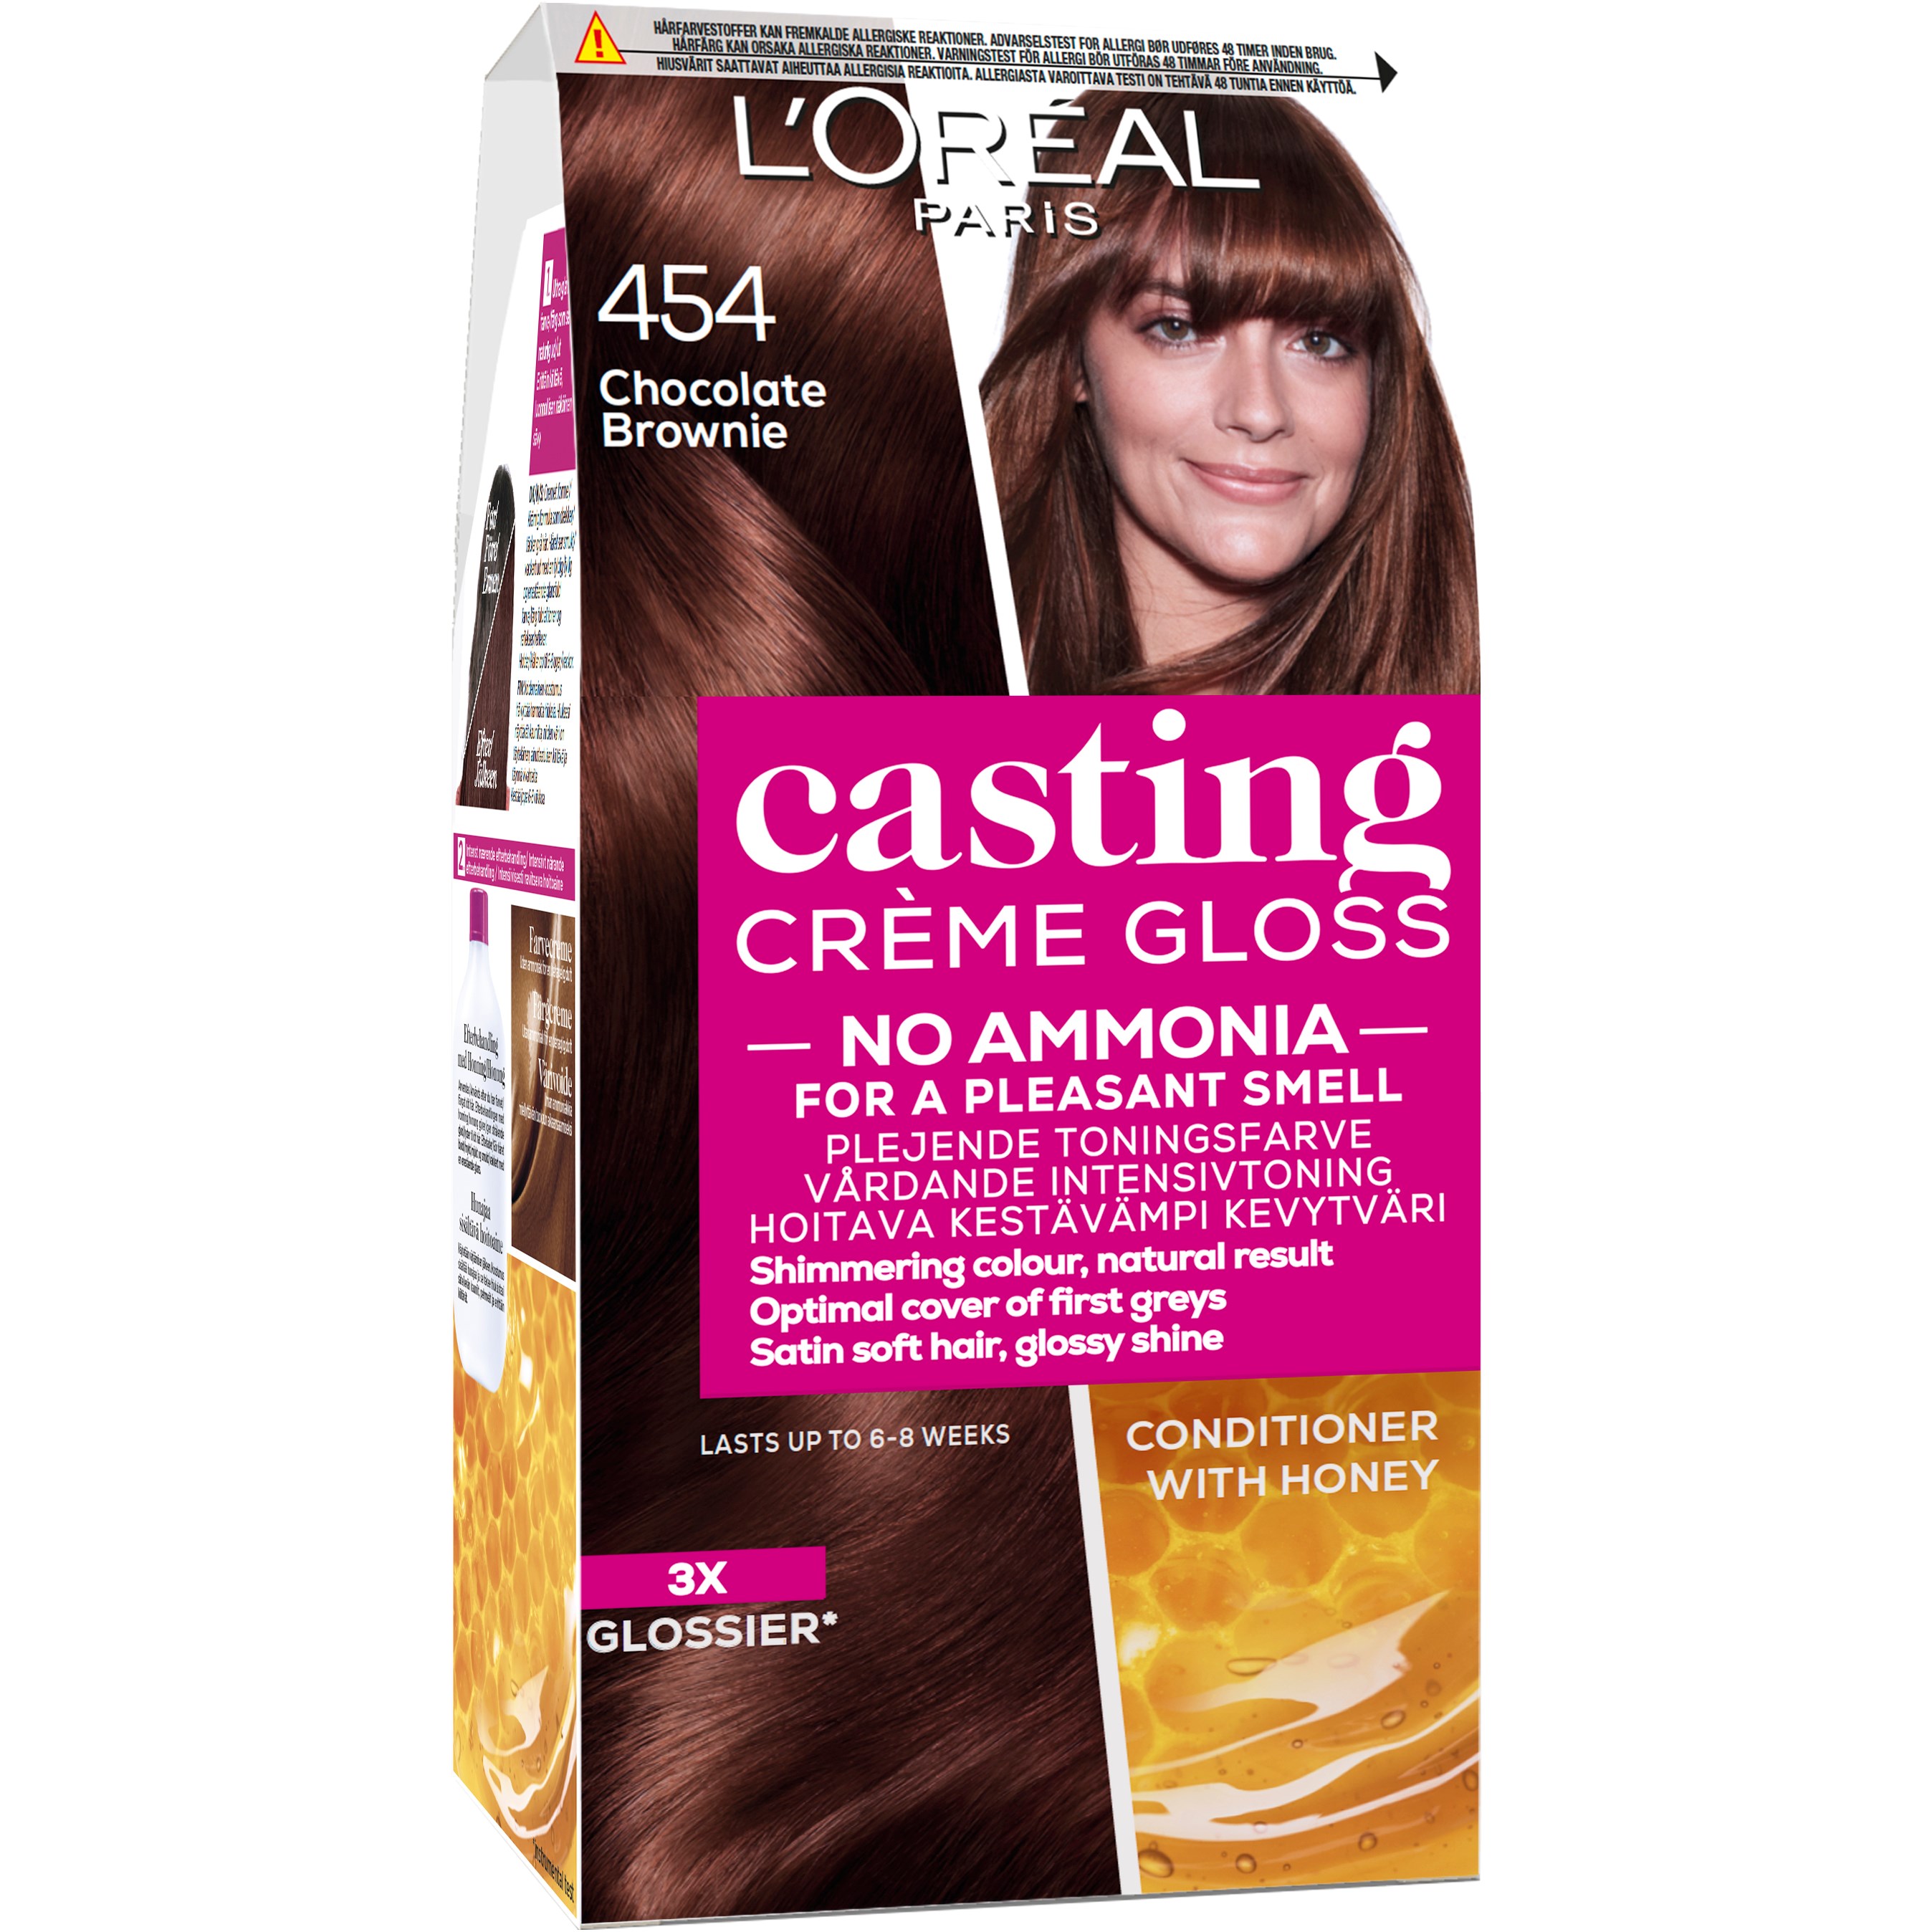 Loreal Paris Casting Crème Gloss 454 Chocolate Brownie